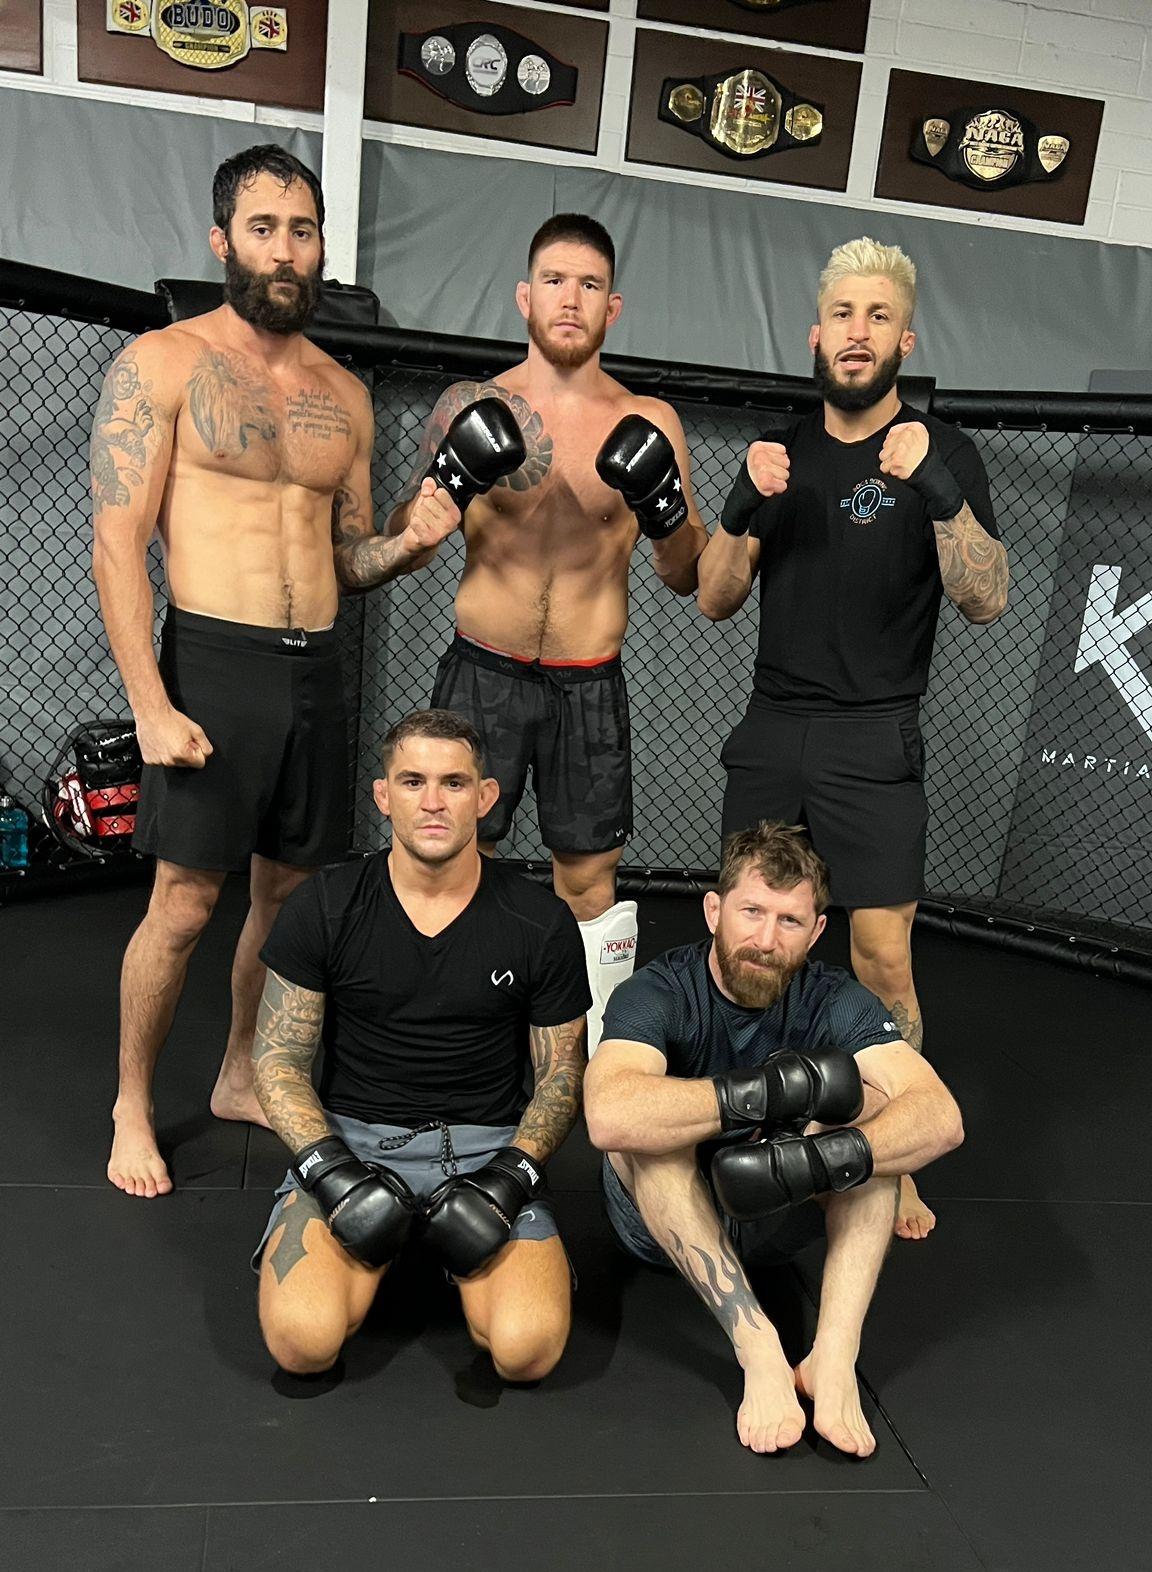 El peleador de UFC Dustin Poirier con sus amigos luego de un entrenamiento en el gimnasio